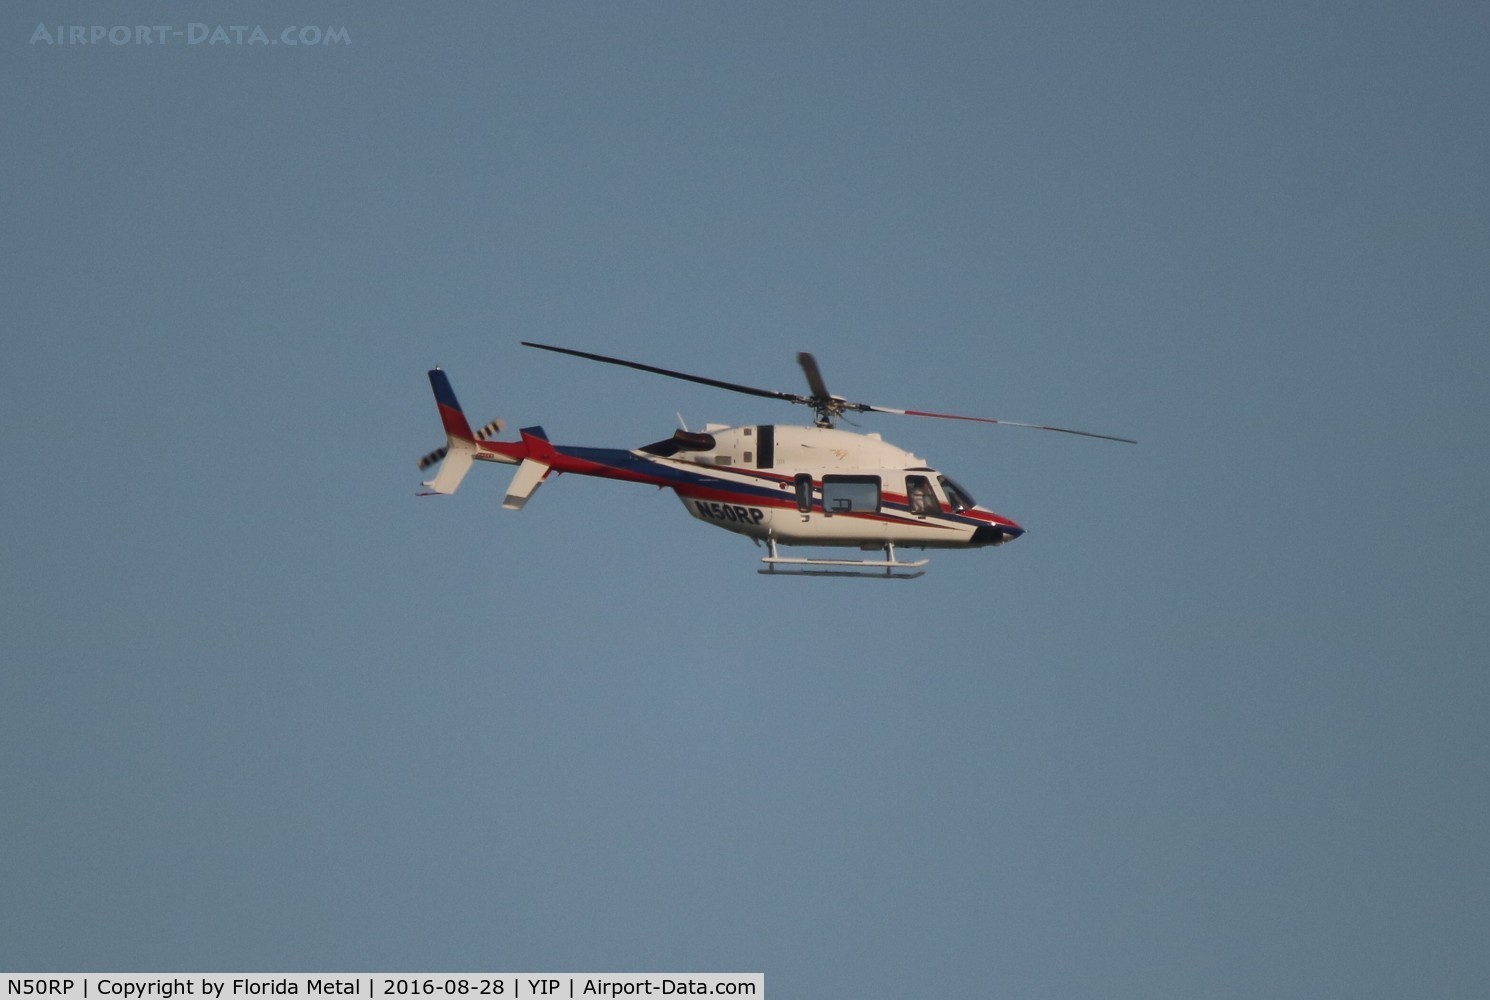 N50RP, 2000 Bell 427 C/N 56008, Penske Racing Bell 427